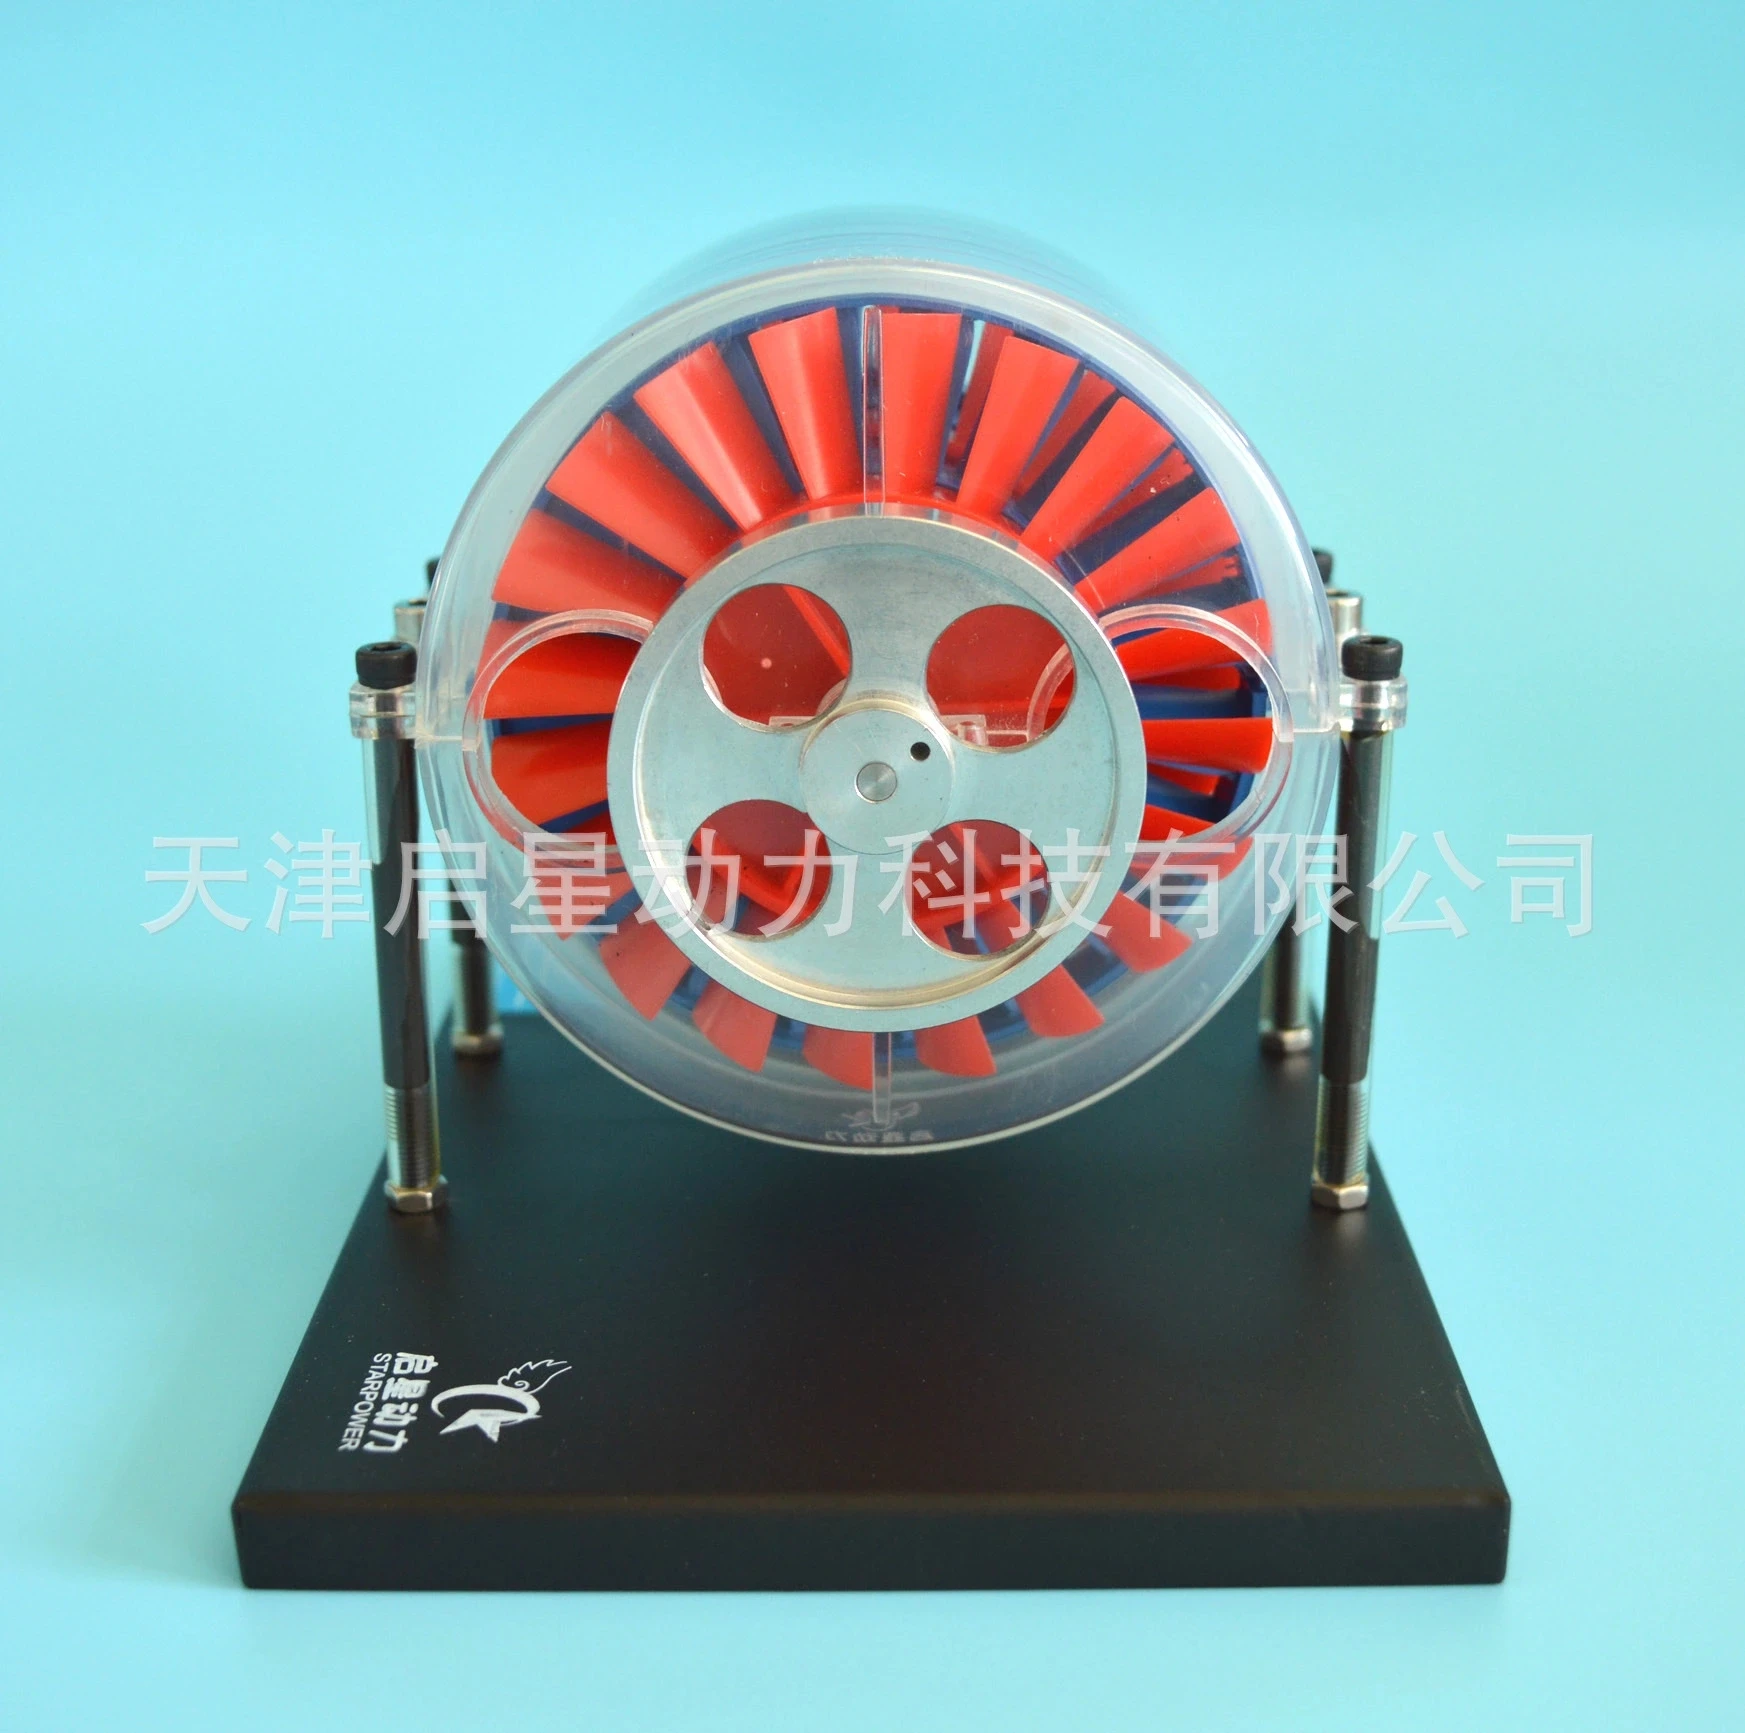 Многоступенчатая Паровая турбина модель физическая лаборатория демонстратор научная головоломка игрушка подарок